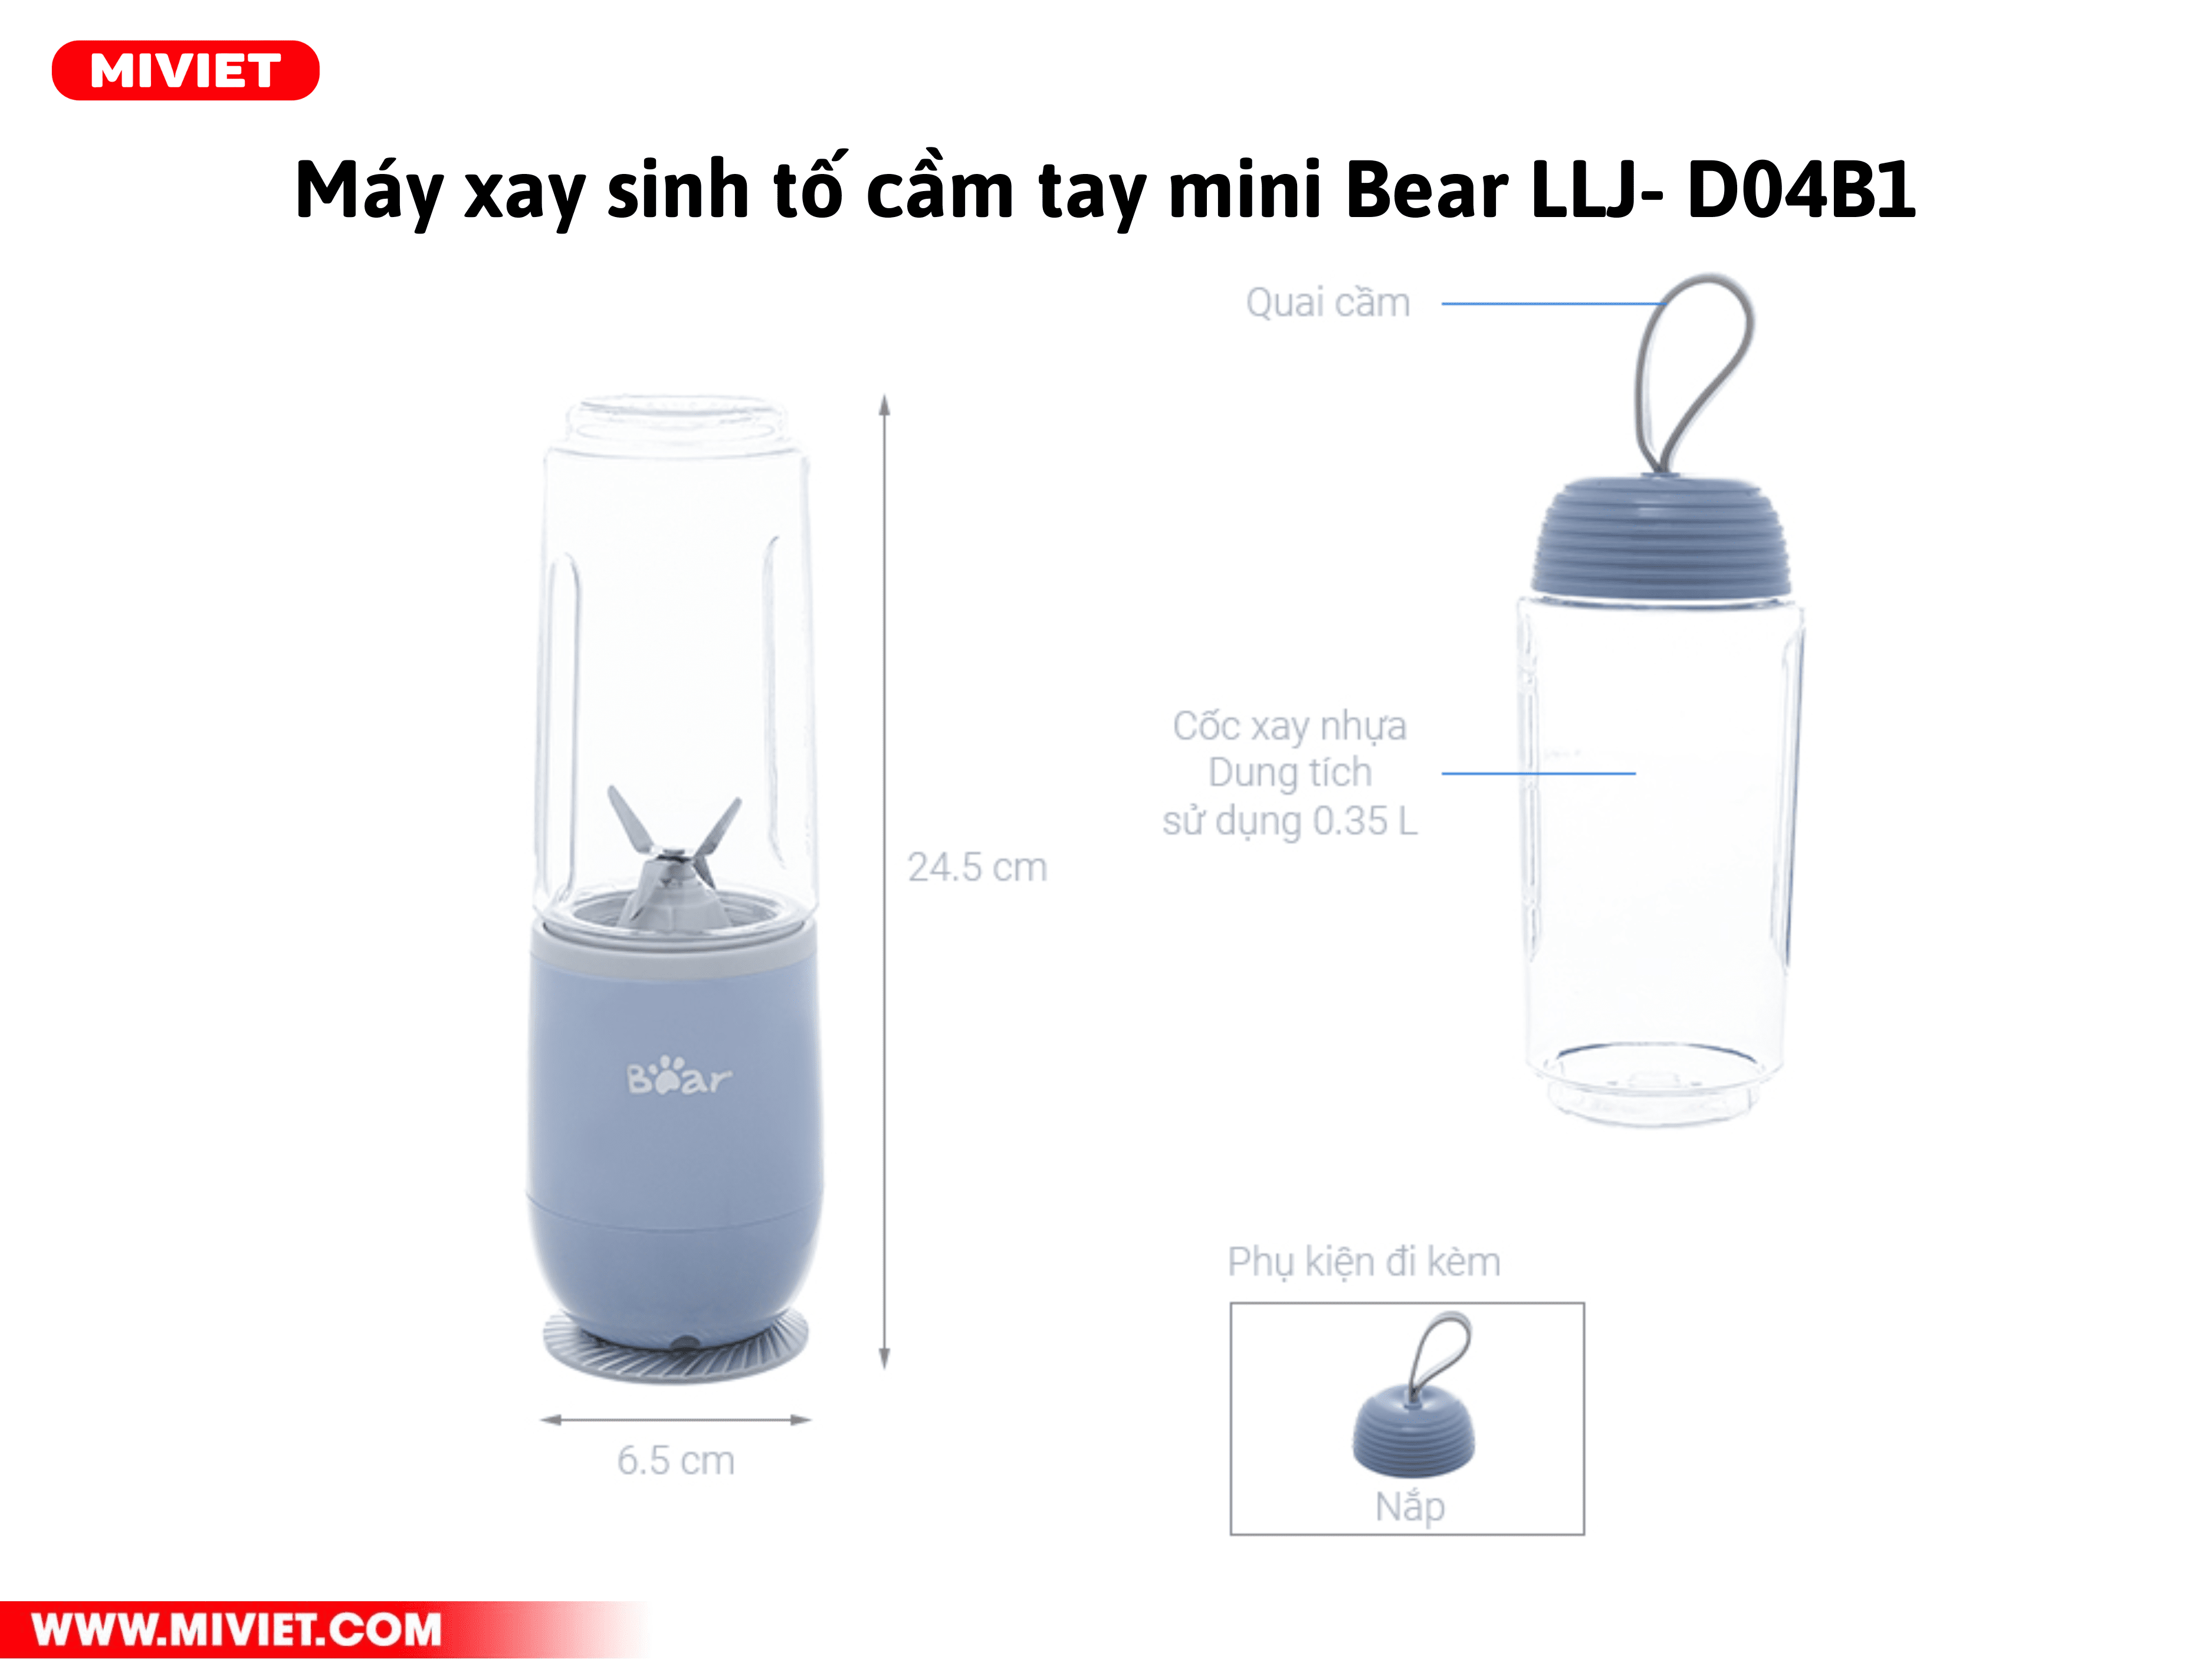 Kích thước và nguyên liệu của máy xay sinh tố cầm tay mini Bear LLJ-D04B1